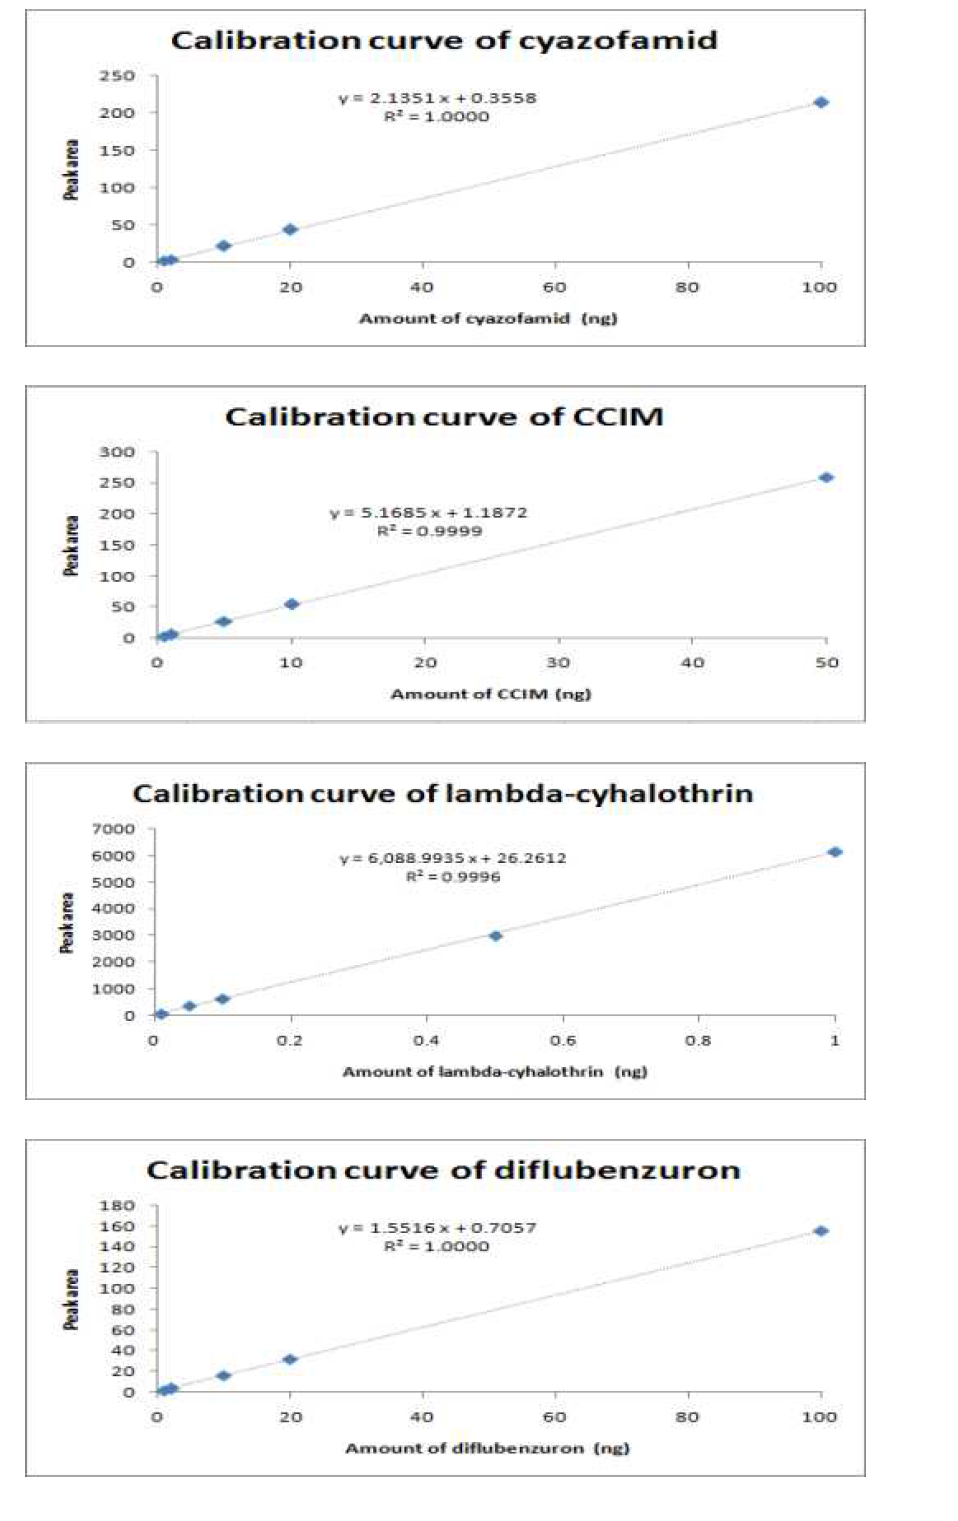 엇갈이배추 중 cyazofamid, CCIM, lambda-cyhalothrin, diflubenzuron의 표준검량선